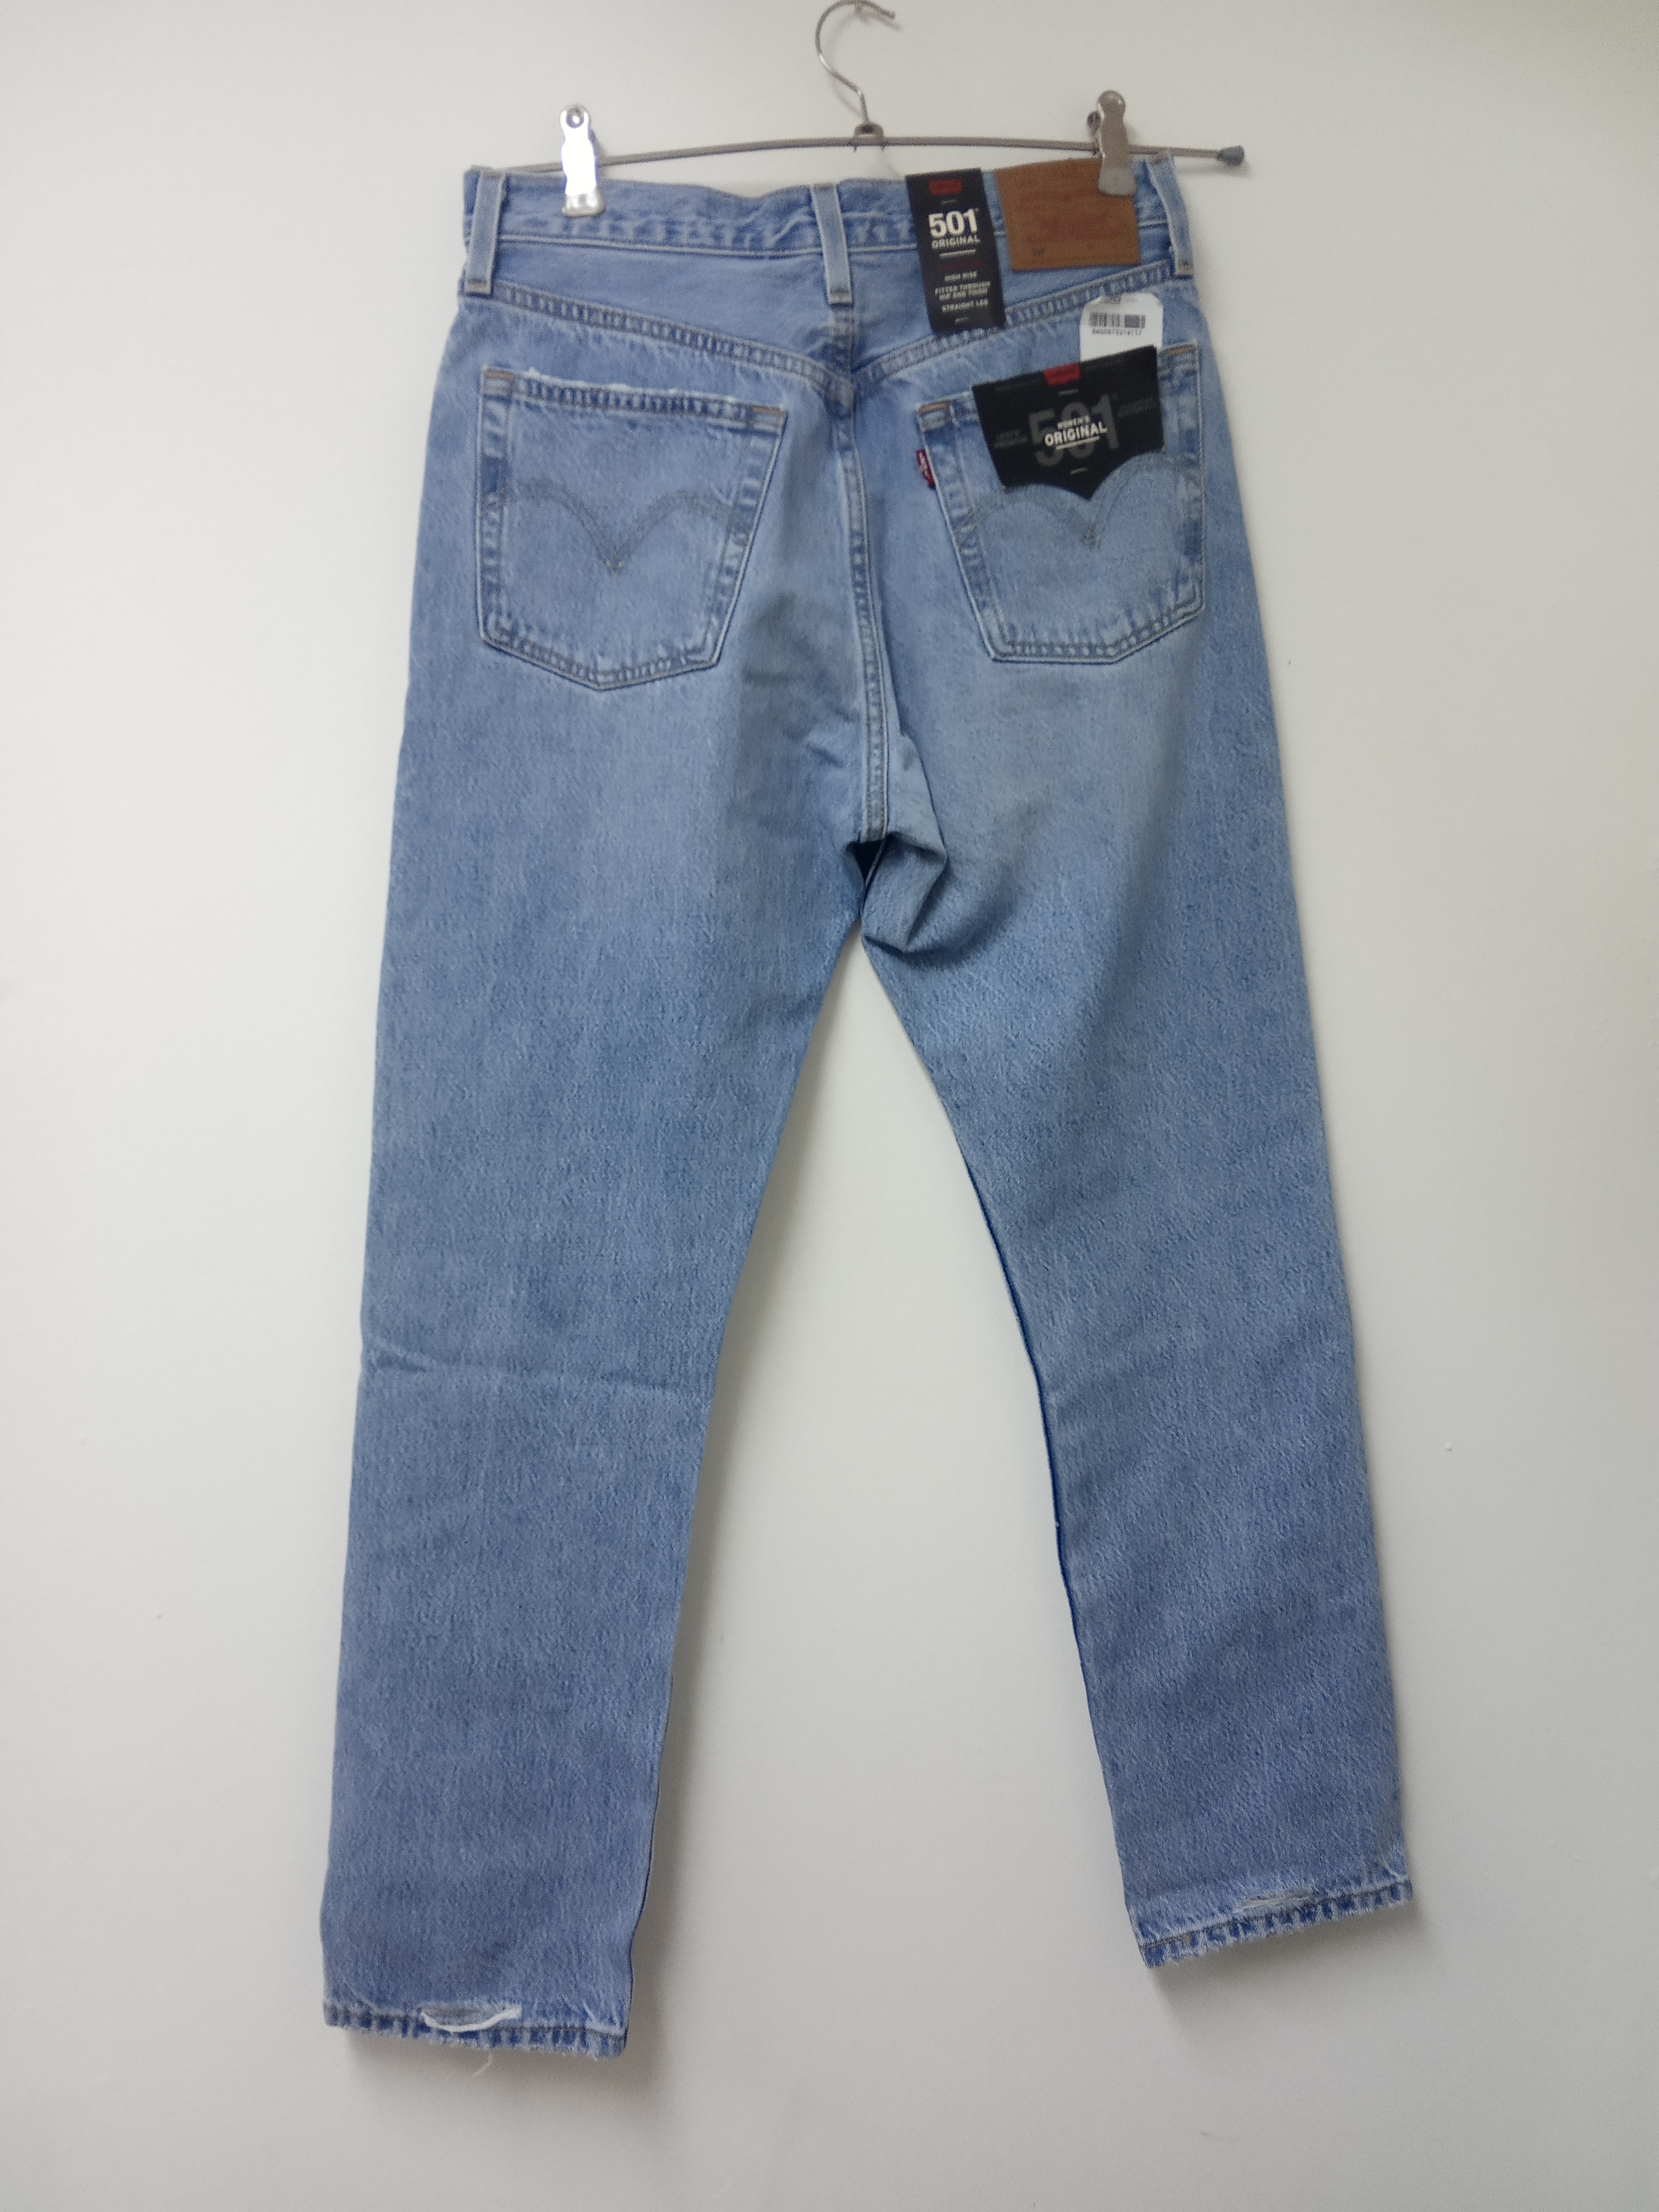 תמונה 2 ,ג'ינס ליווייס 501 אוריגינלי מי למכירה בתל אביב  ביגוד ואביזרים  ג'ינסים ומכנסיים